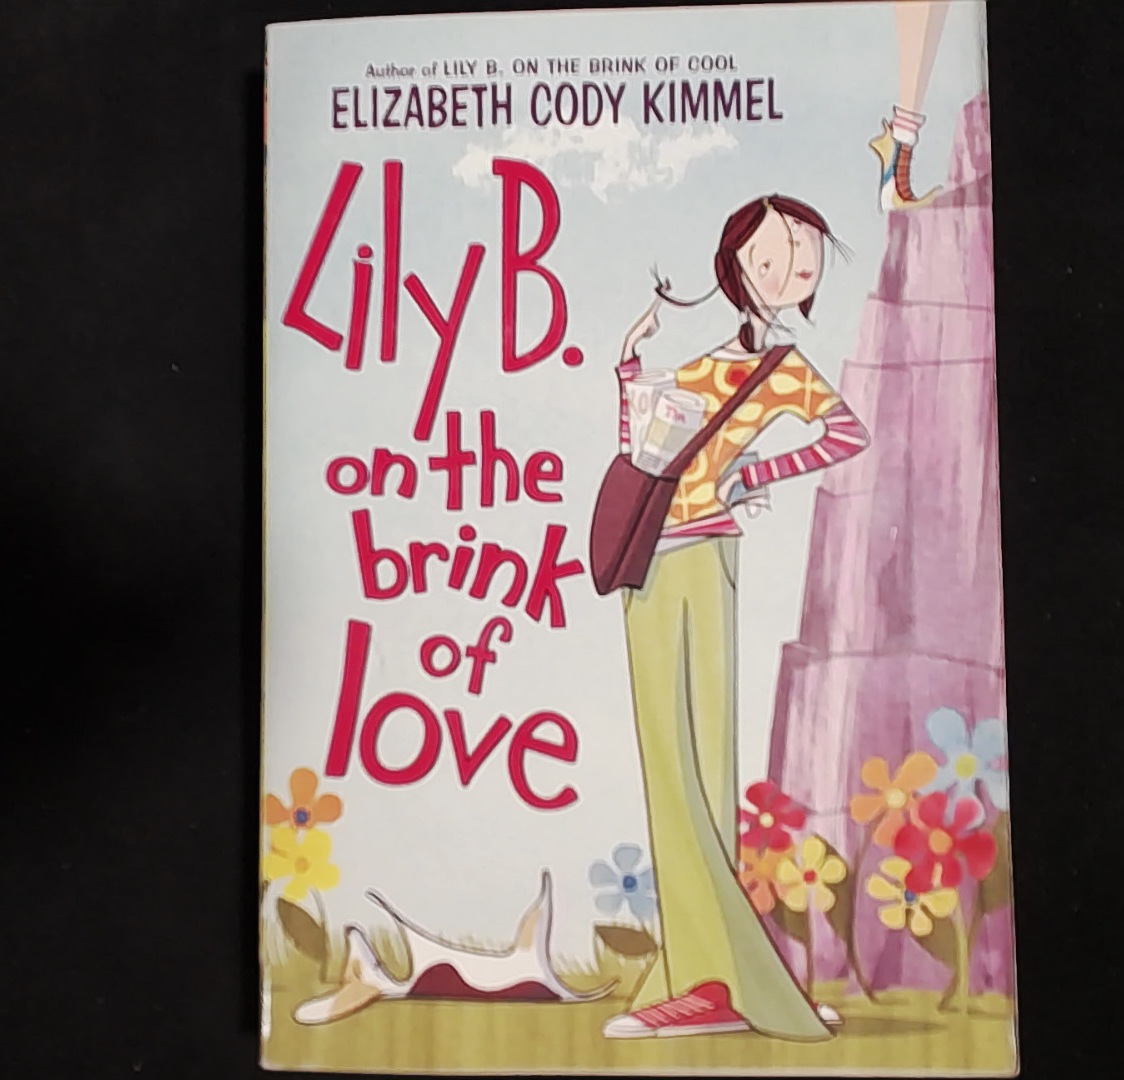 Lily B. on the brink of love - Elizabeth Cody Kimmel